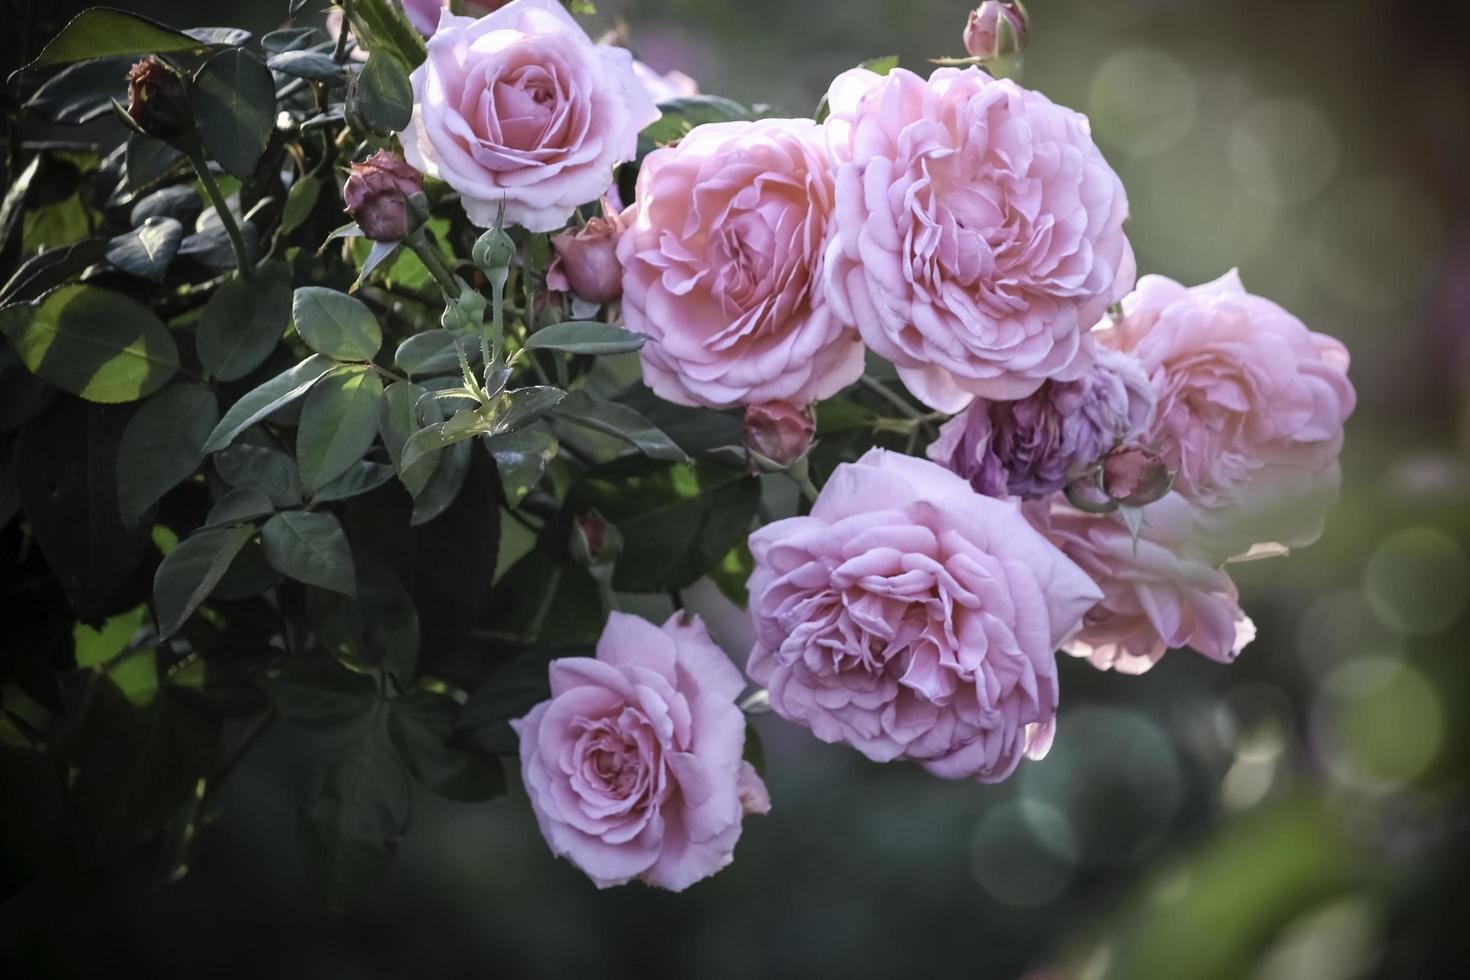 rose inglesi rosa che fioriscono nel giardino estivo, uno dei fiori più profumati, il fiore più profumato, bello e romantico foto